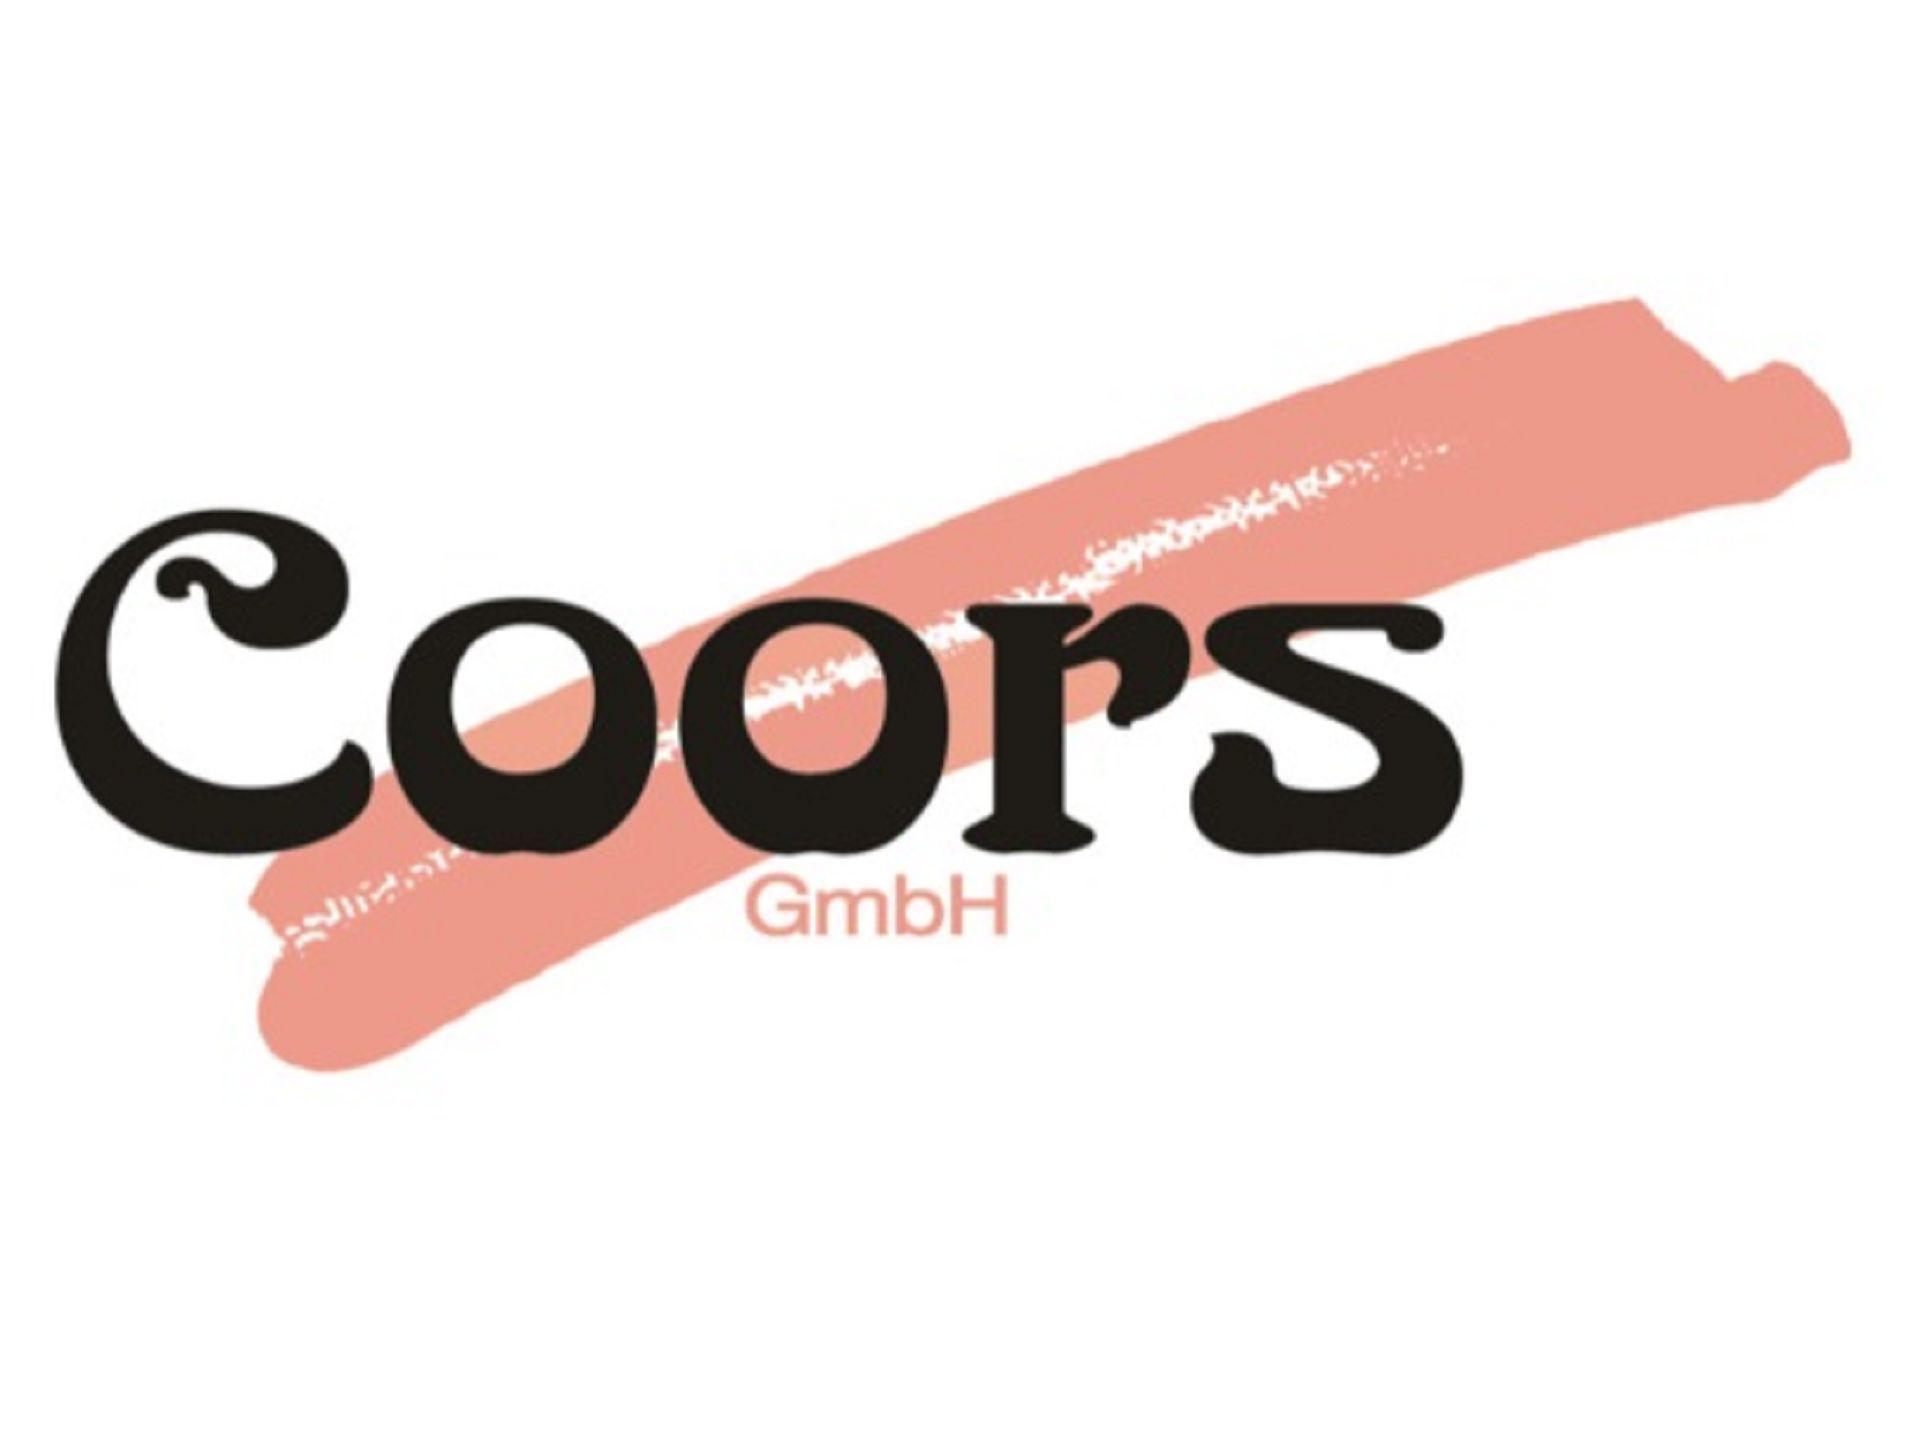 Coors Raumausstatter GmbH